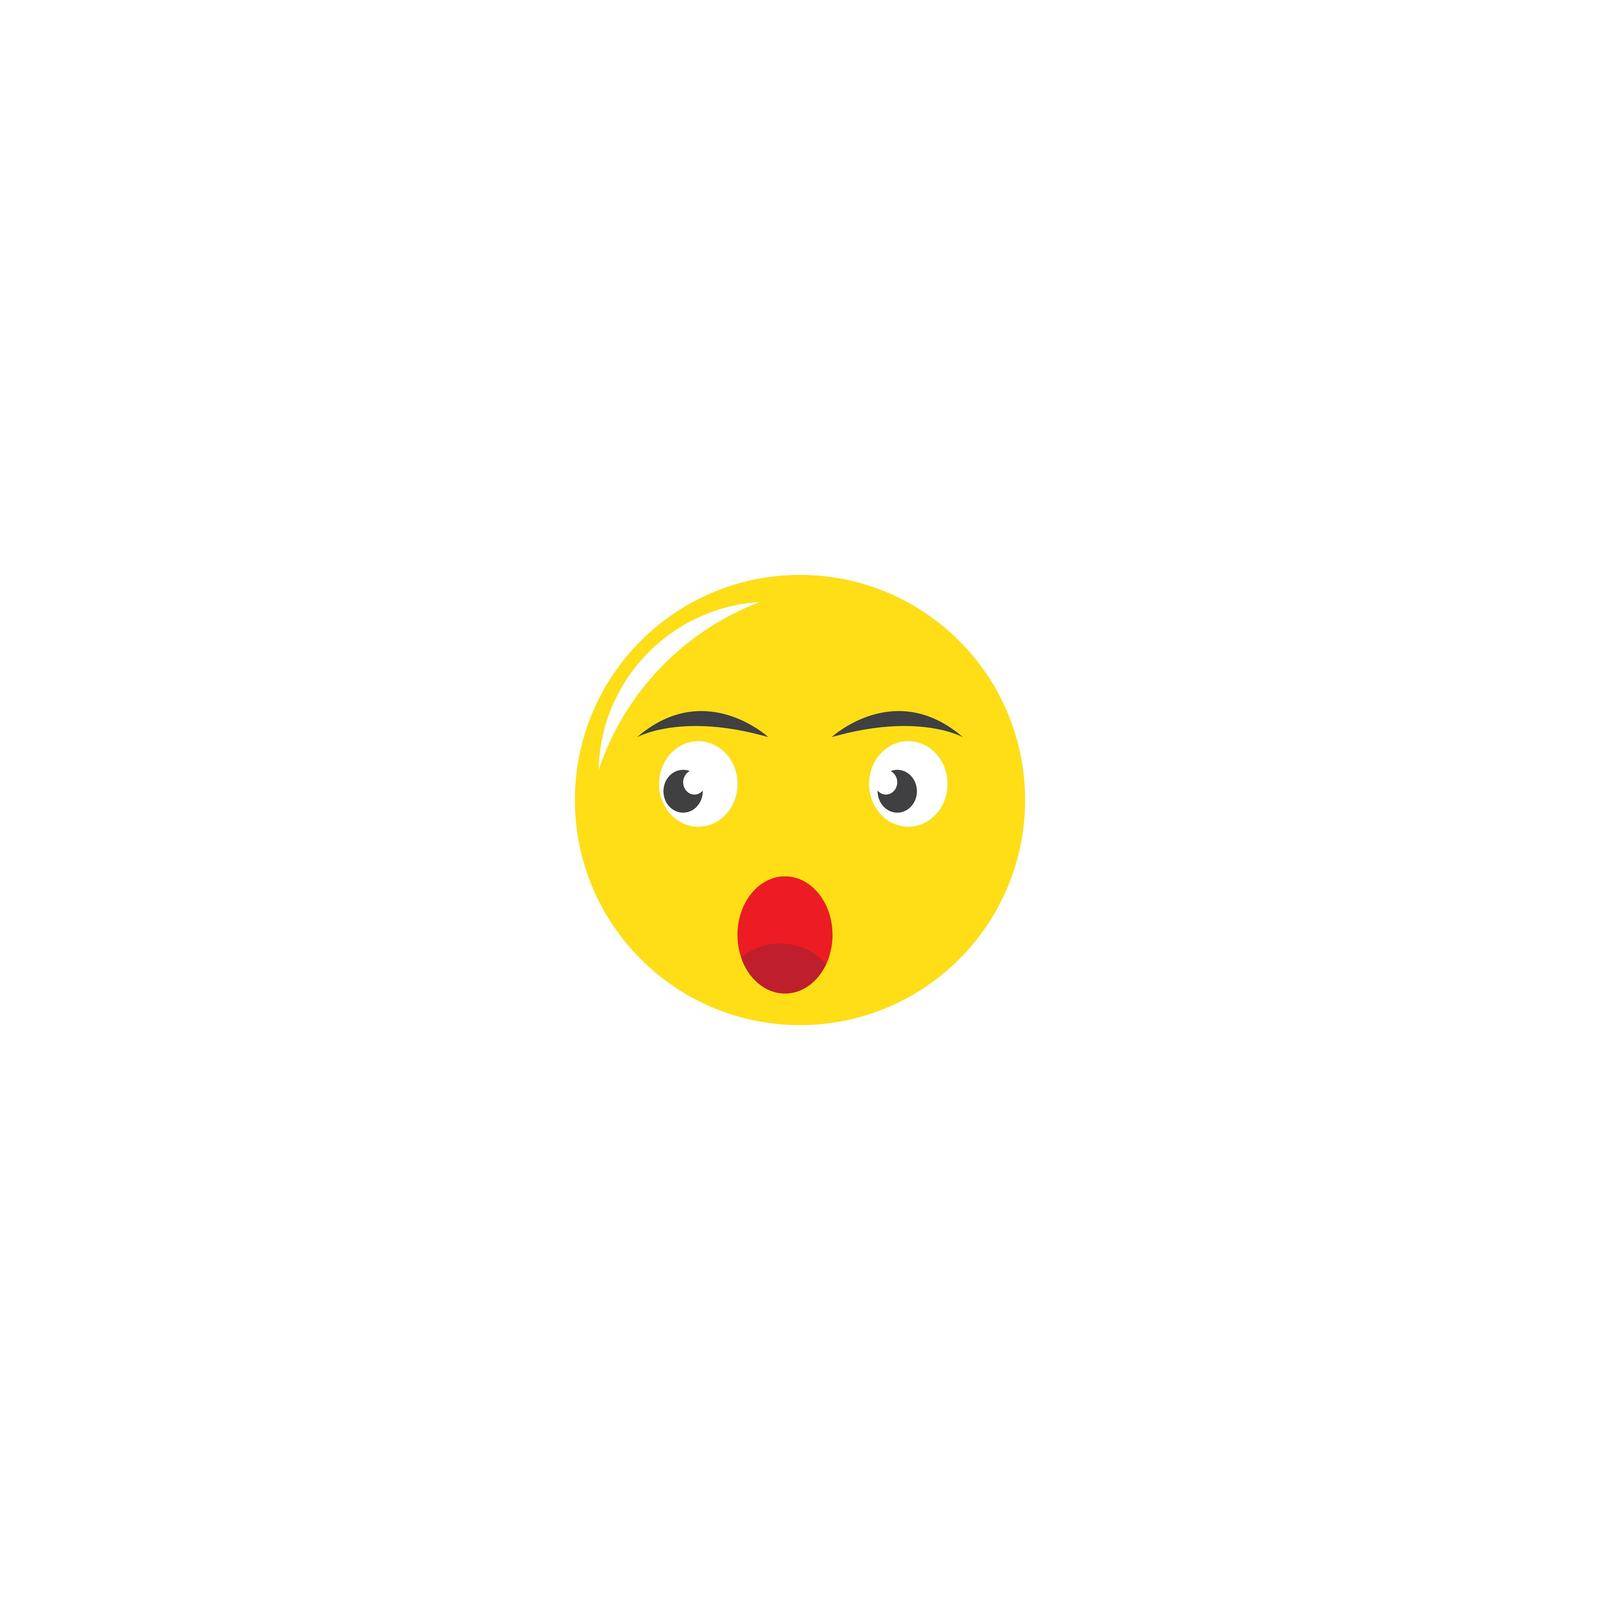 Smile happy face emoticon vector design